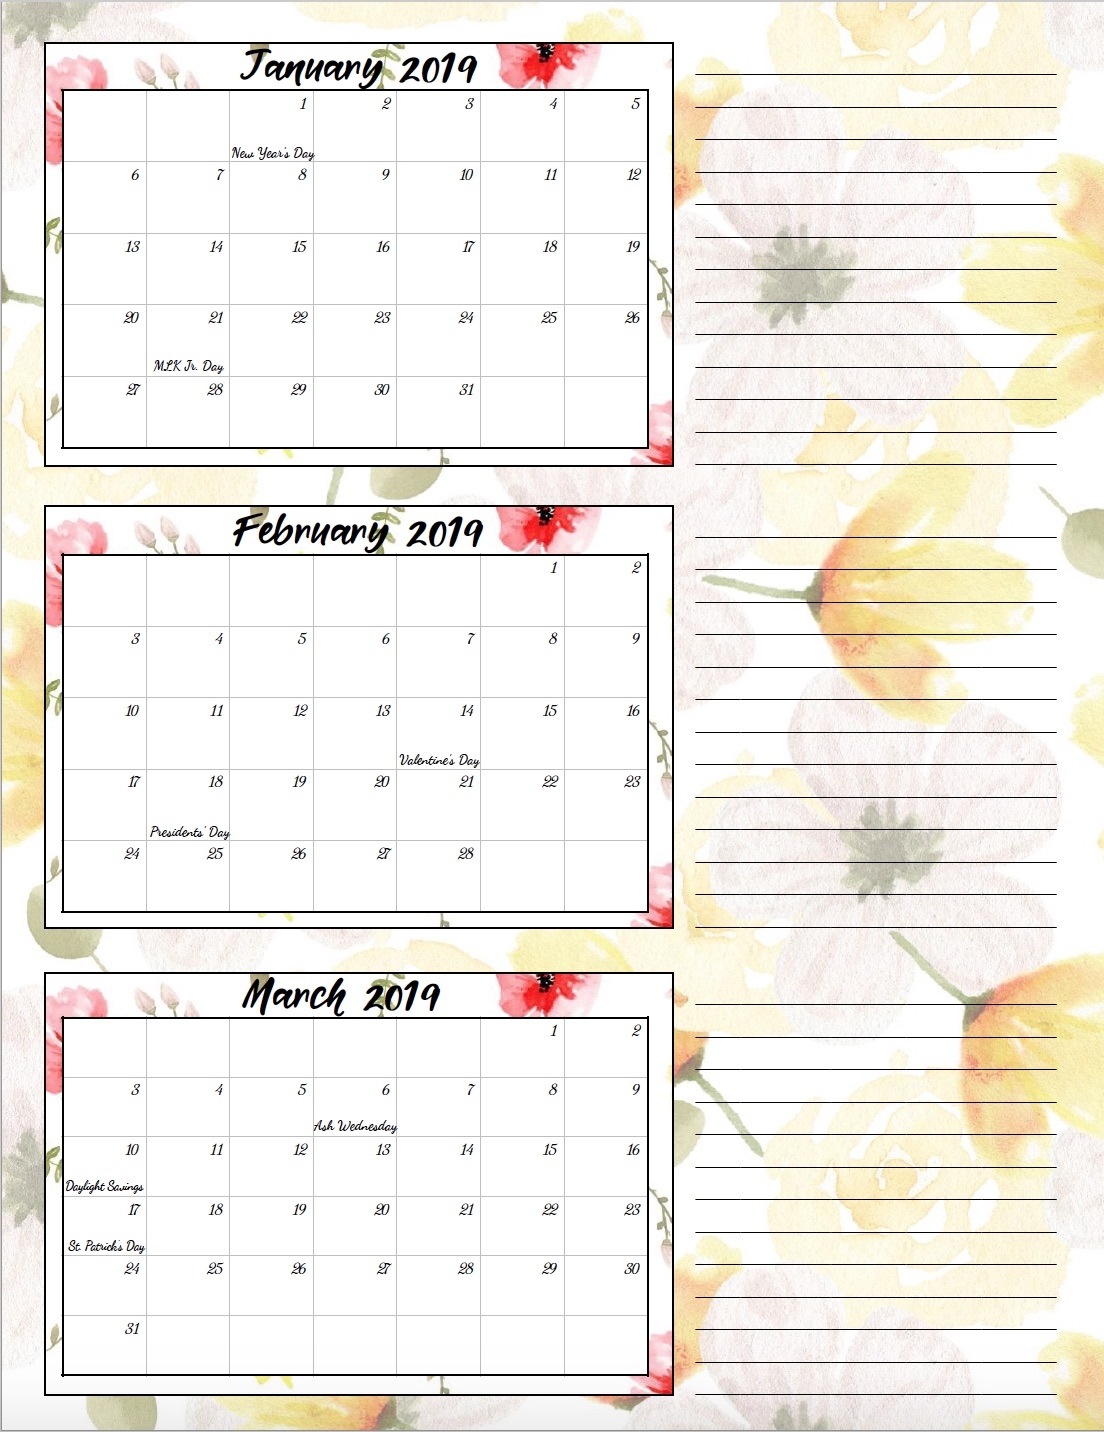 quarterly-calendar-2019-with-holidays-qualads